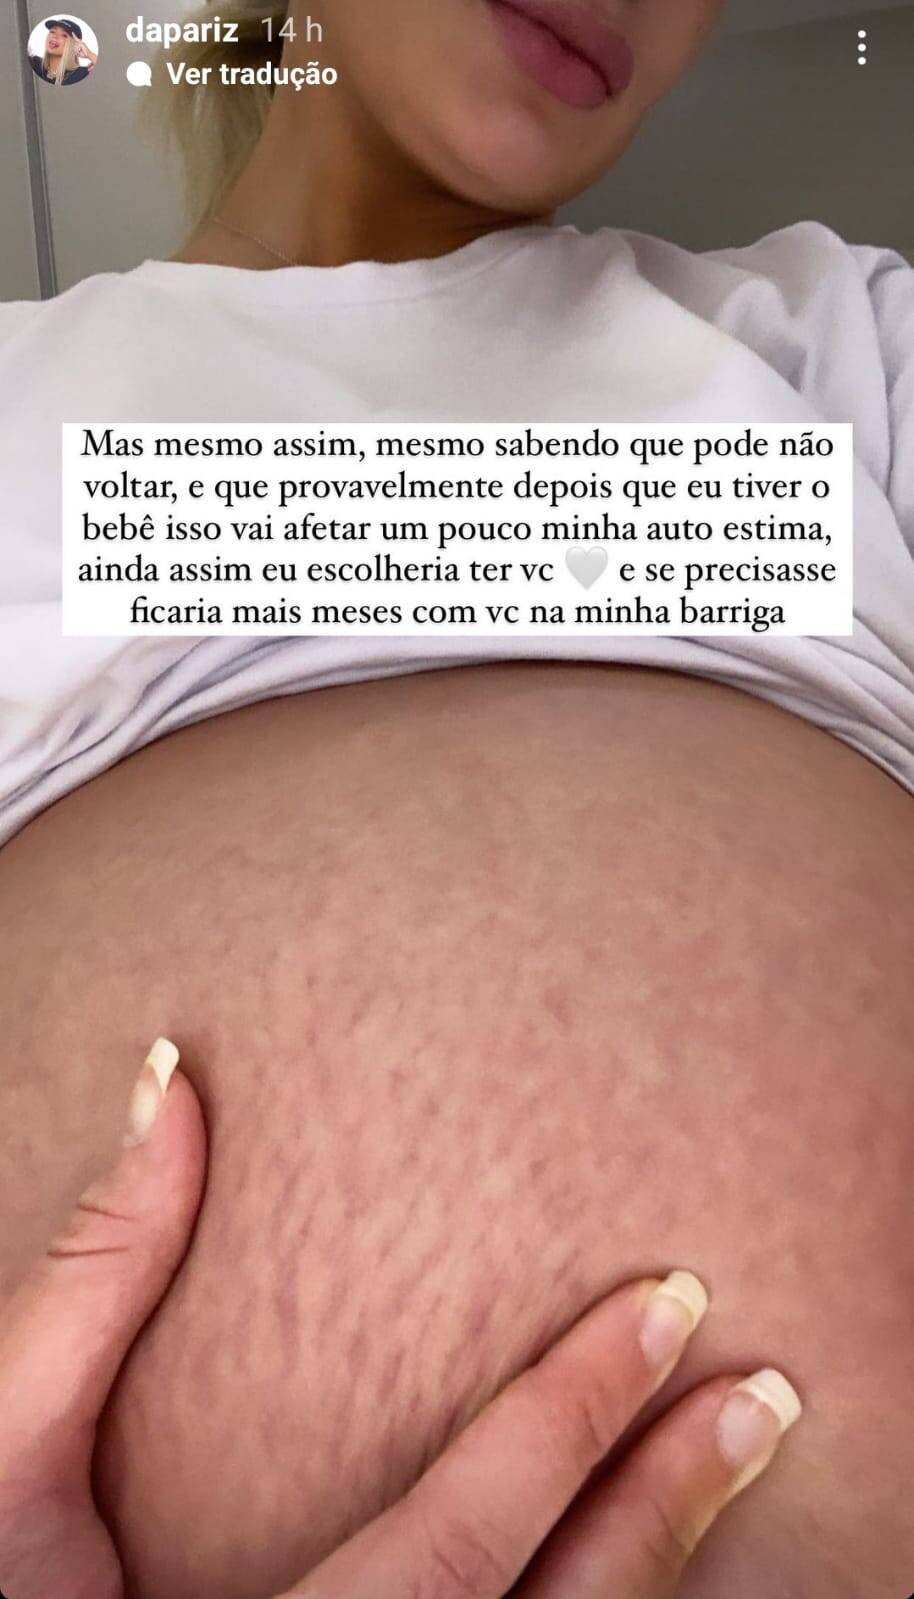 Stories de Dapariz falando sobre mudanças do corpo na gravidez. Foto: Reprodução/Instagram